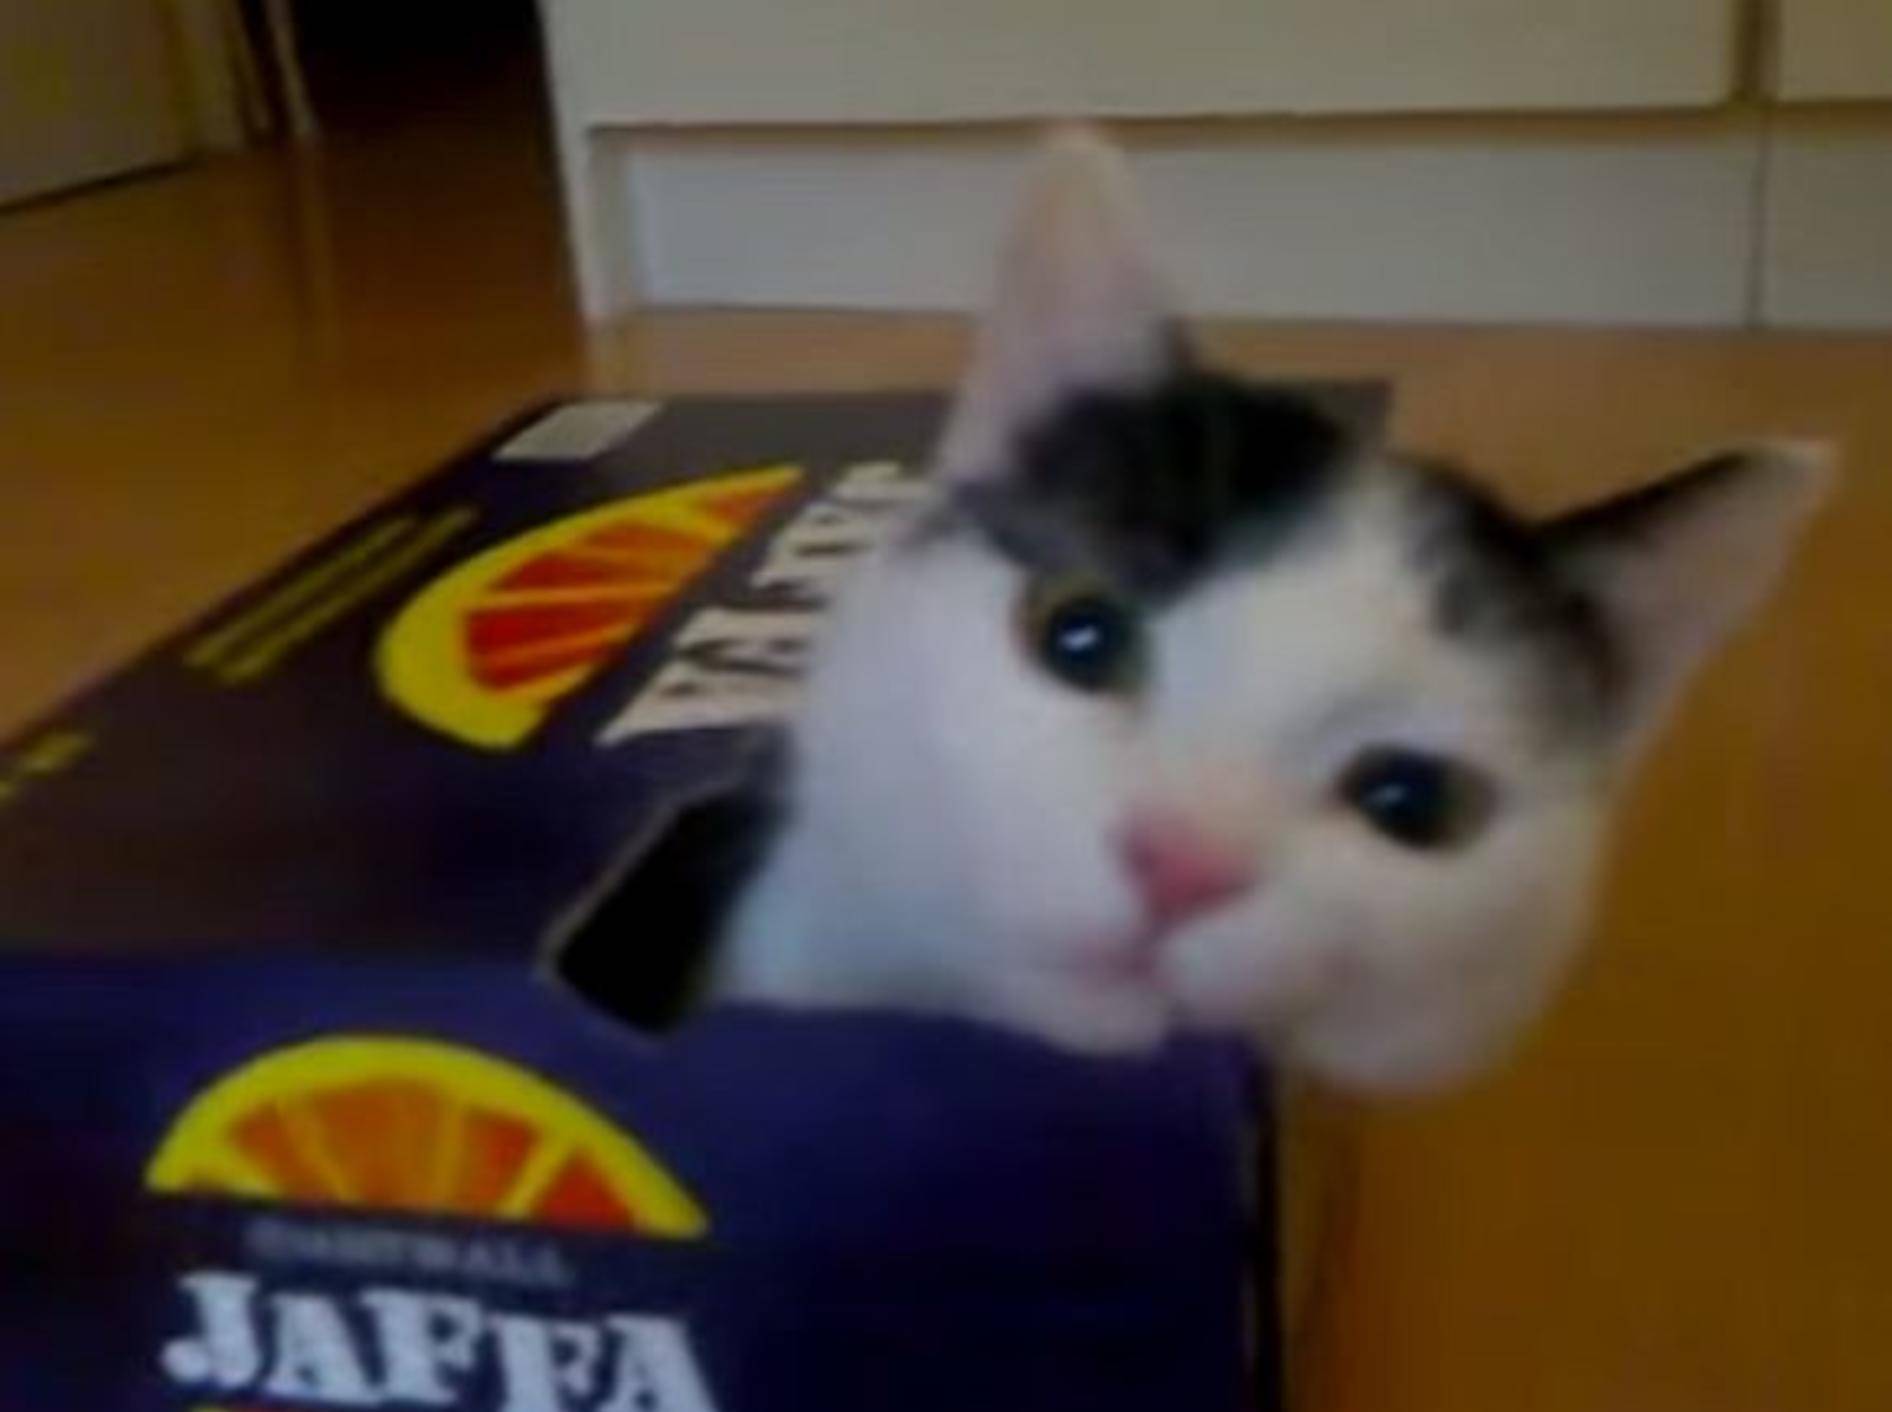 Emsige Katze: "Ich will in diesen Karton!" – Bild: Youtube / MrKissa88